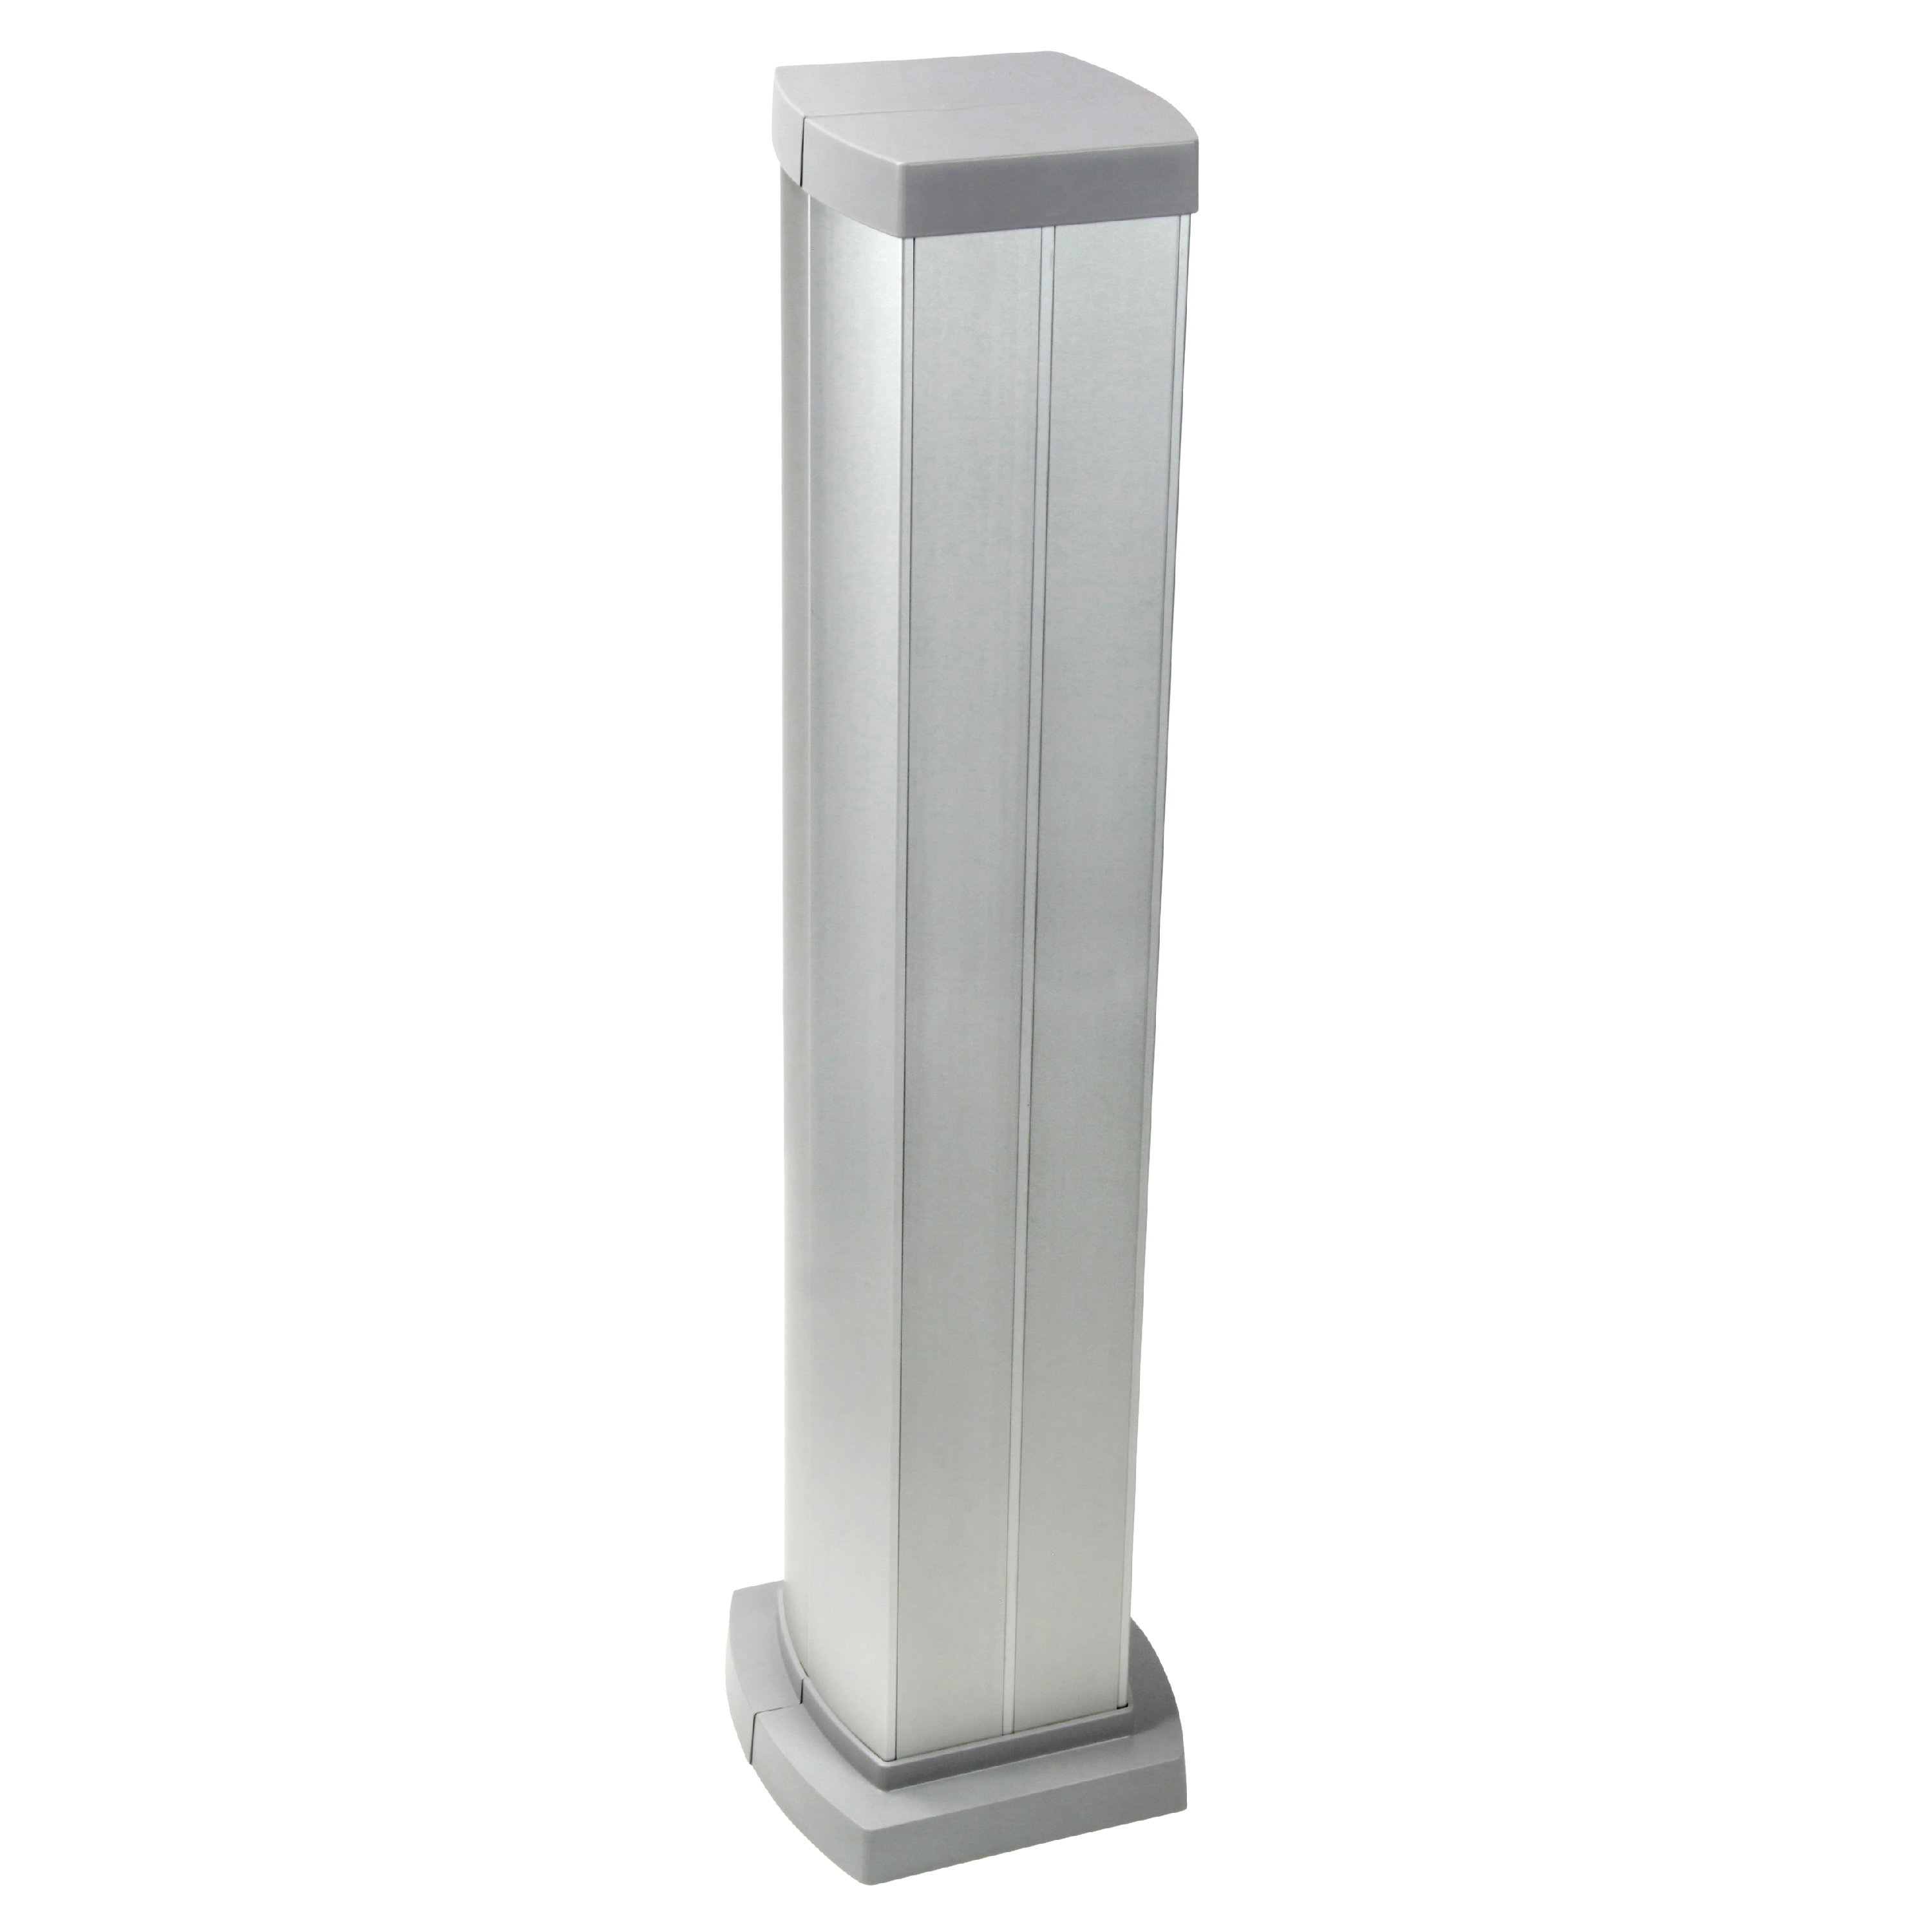 Legrand Snap-On мини-колонна алюминиевая с крышкой из алюминия 4 секции, высота 0,68 метра, цвет алюминий